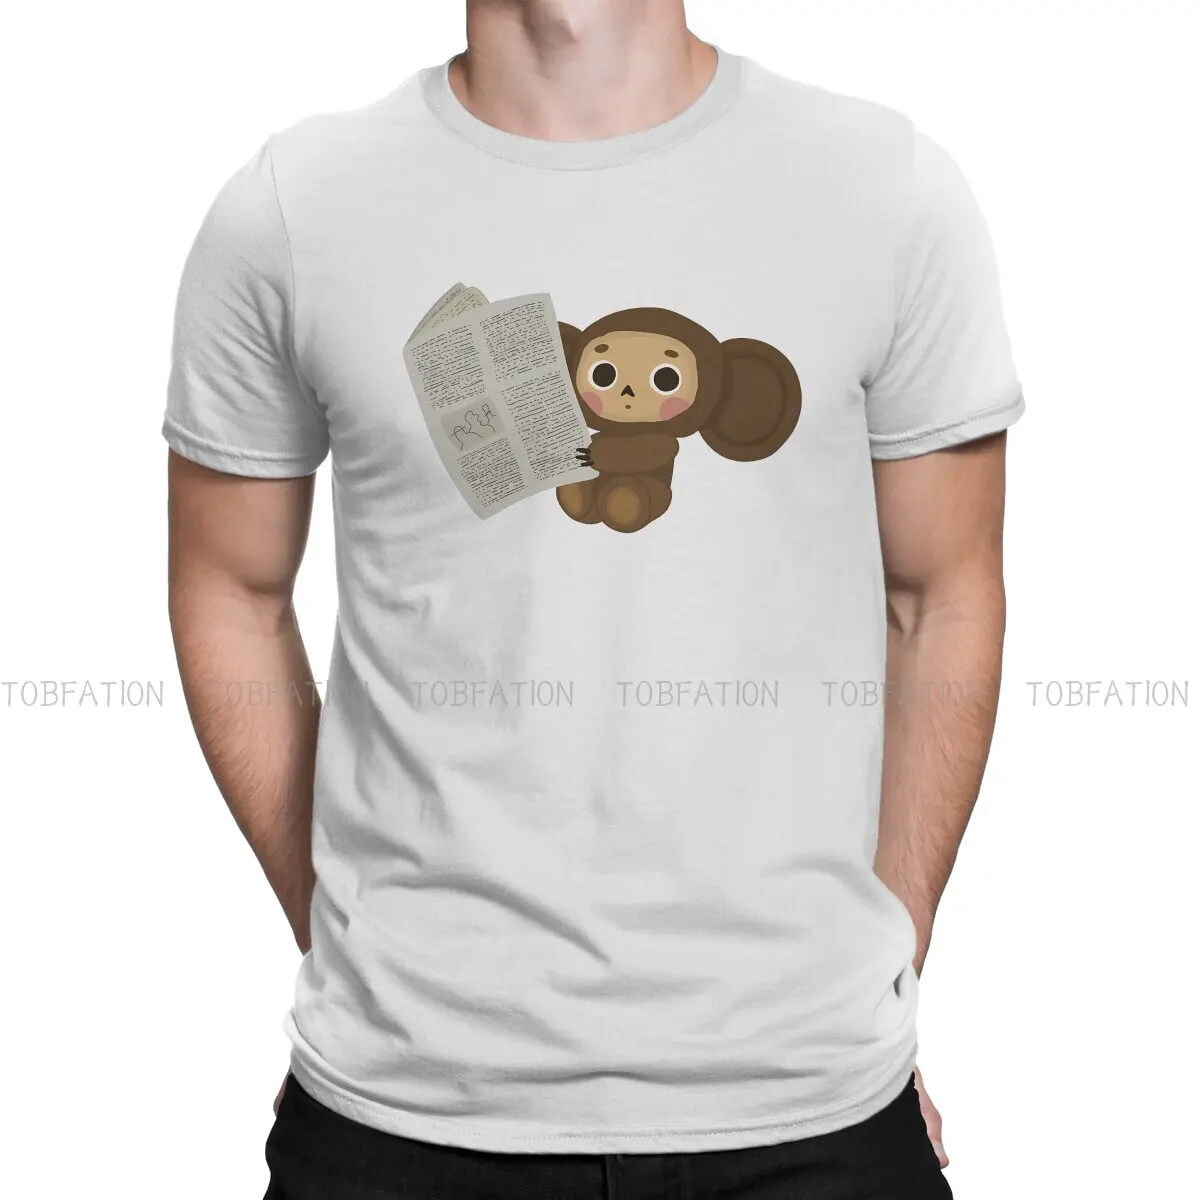 

Бумажная женская футболка Cheburashka Che Burashka Gena, русская мультяшная ткань, базовая футболка, мужские топы, индивидуальность, Большая распродажа